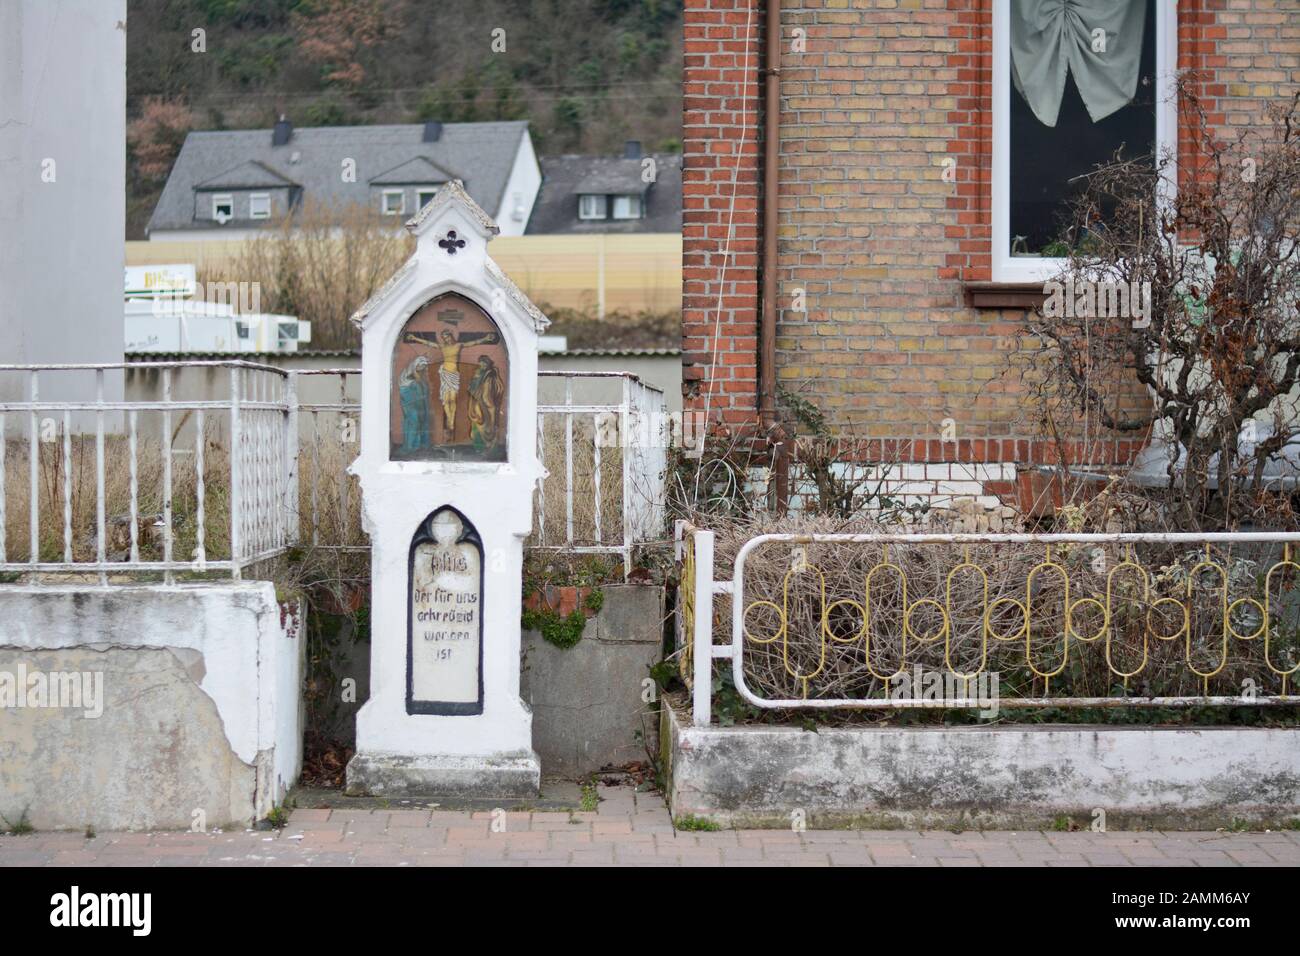 Ein Wegschrein mit Glasbruch steht in Kamp-Bornhofen im oberen Mittelrheintal. Unter dem gekreuzigten Jesus steht geschrieben: "Jesus, der für uns gekreuzigt wurde." [automatisierte Übersetzung] Stockfoto